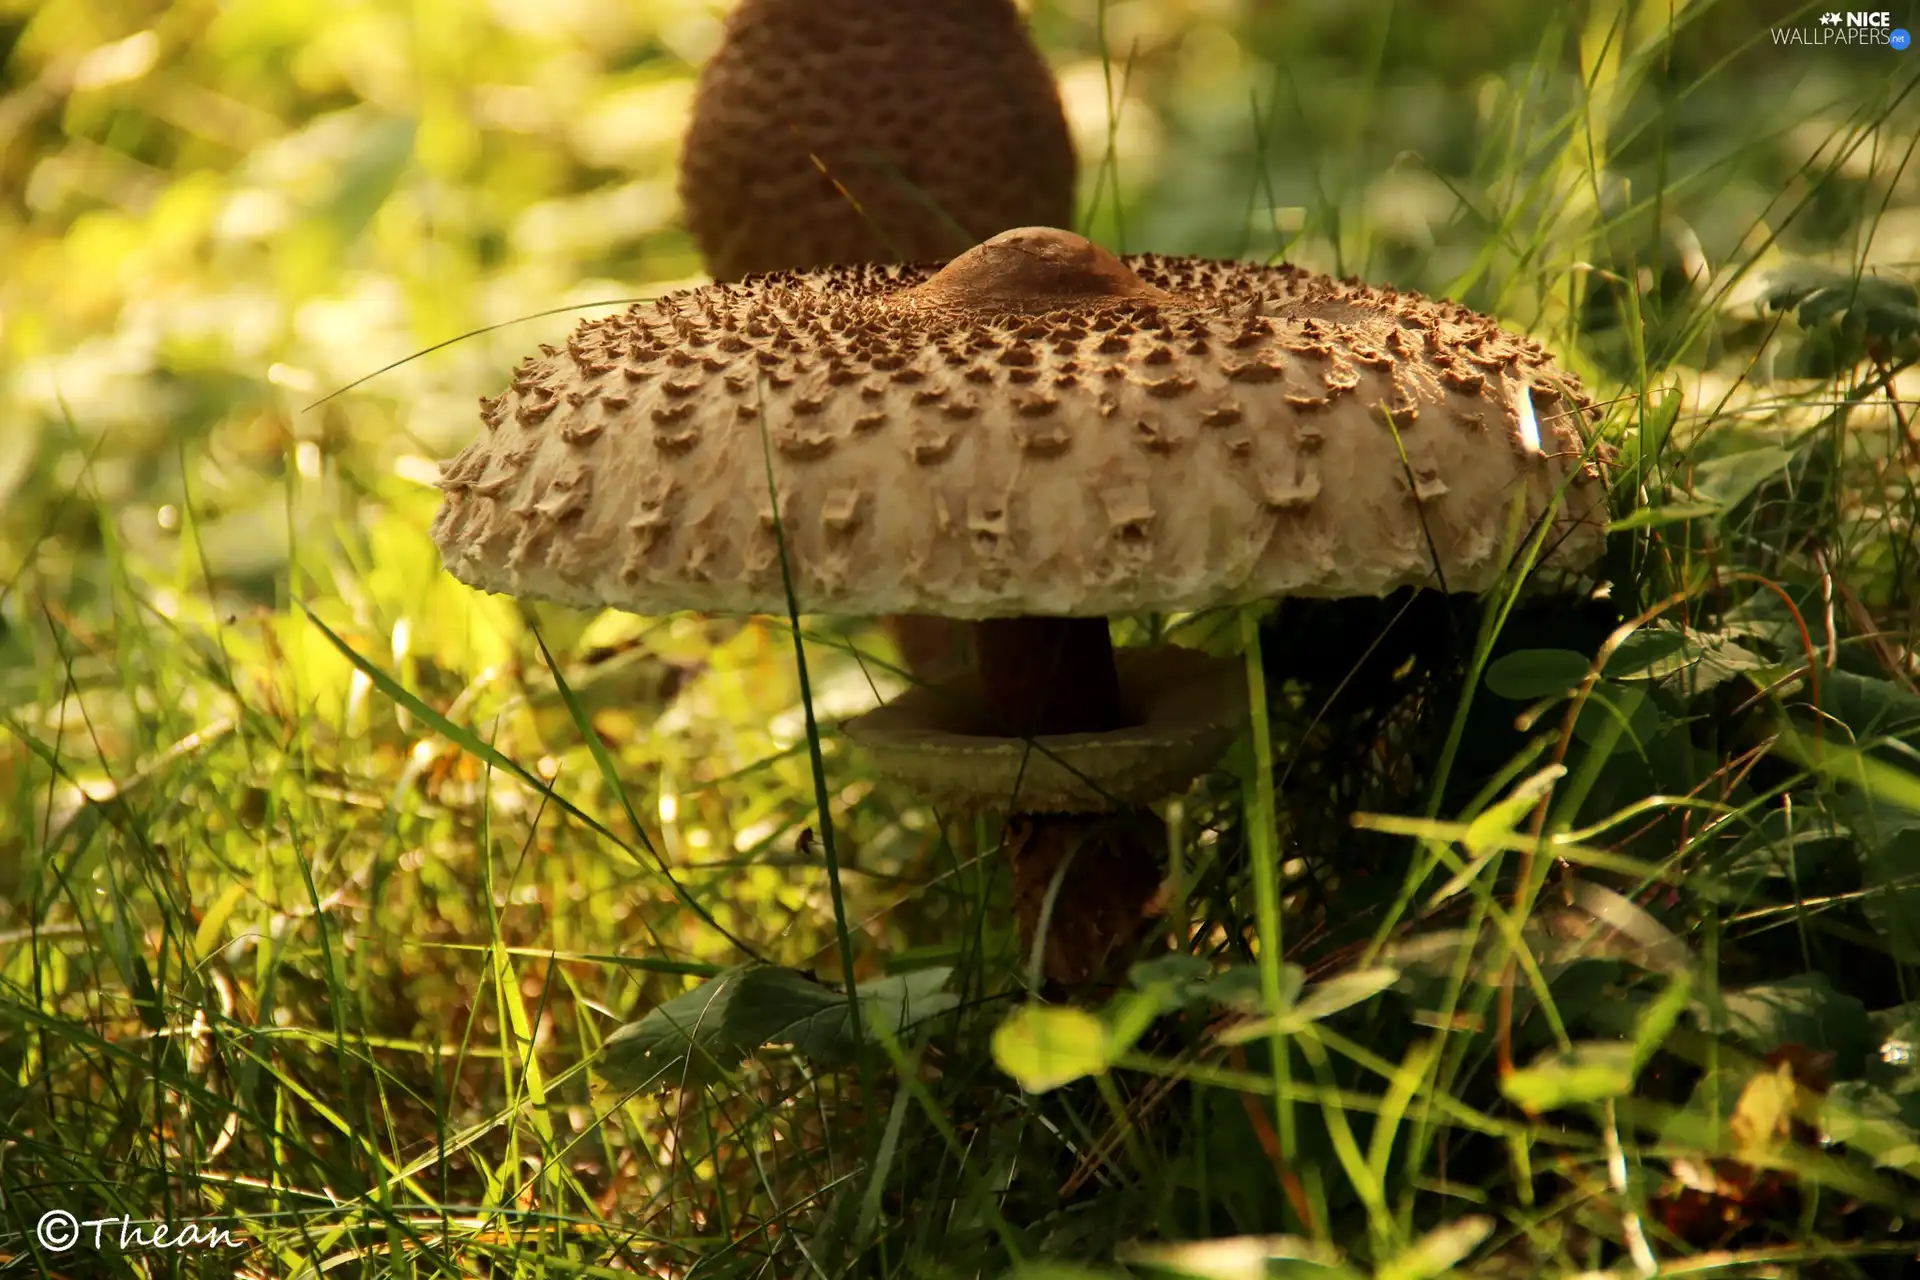 Macrolepiota Procera, Mushrooms, Hat, owl